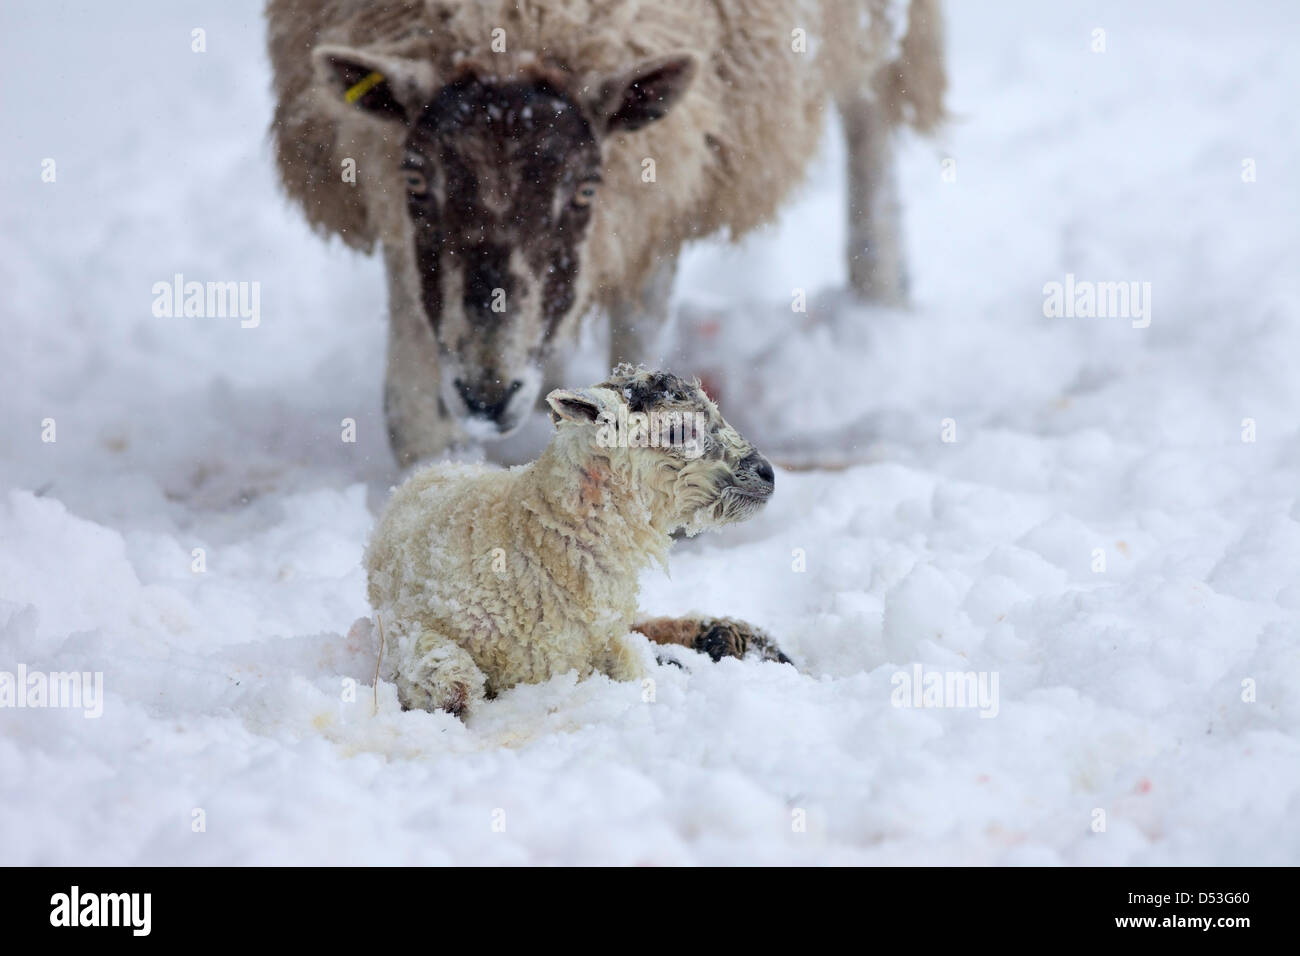 Comté de Durham Royaume-Uni. 23 mars 2013 Sheep avec son agneau né pendant la forte chute de neige et les blizzards qui ont frappé la région pendant la nuit. Crédit : David Forster / Alamy Live News Banque D'Images